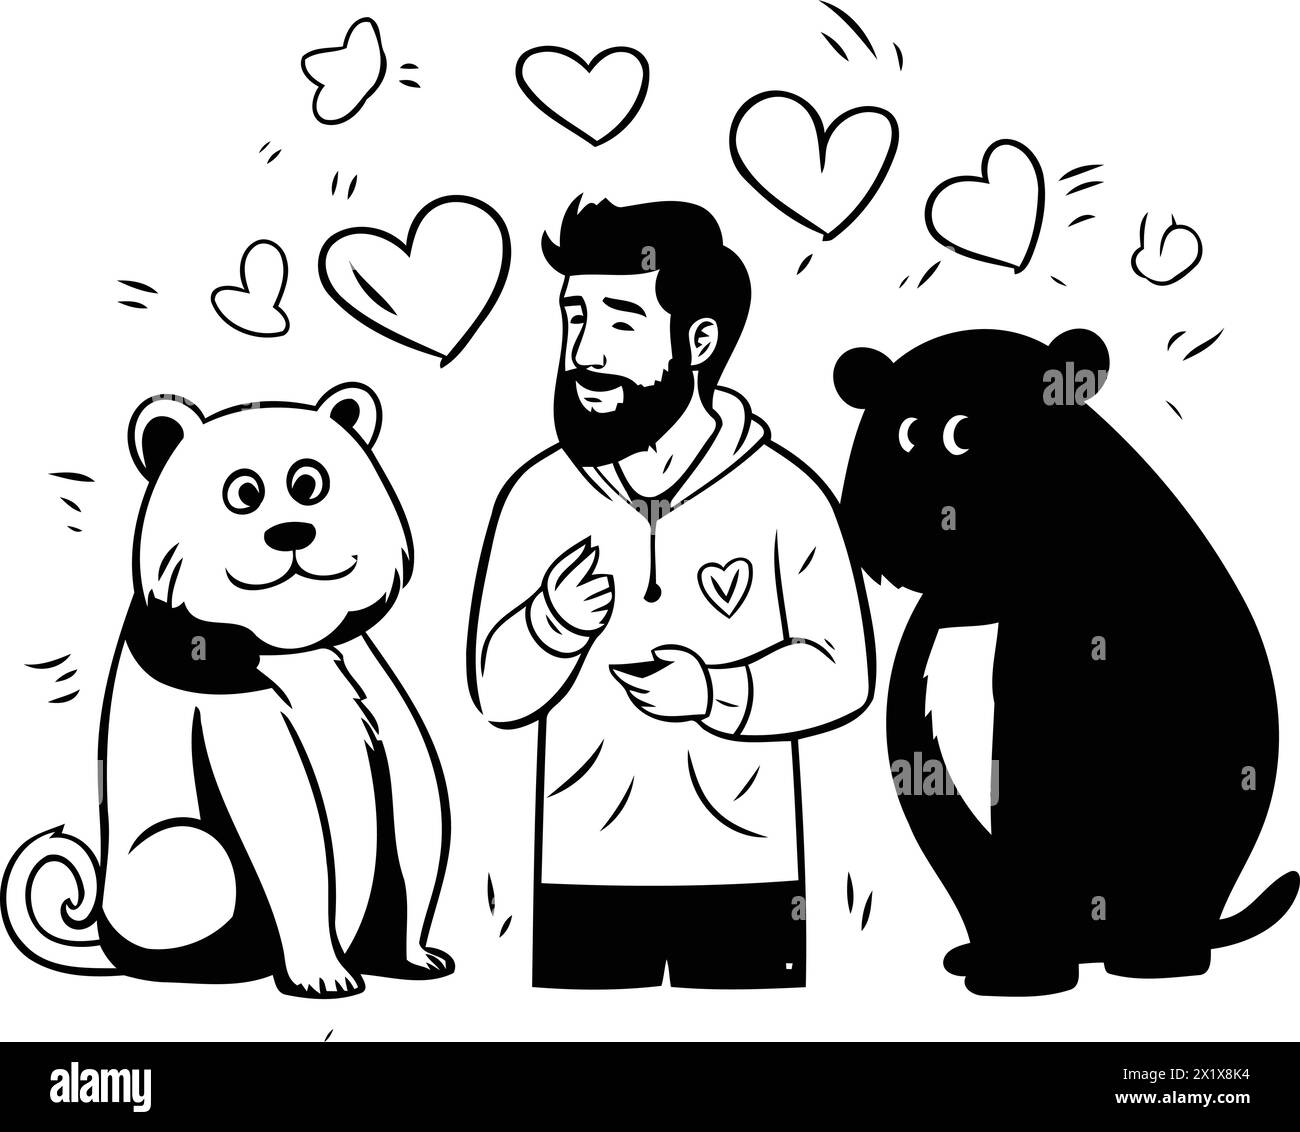 Vektor-Cartoon-Illustration eines Mannes mit Bart. Einen Teddybären und einen Braunbären halten. Stock Vektor